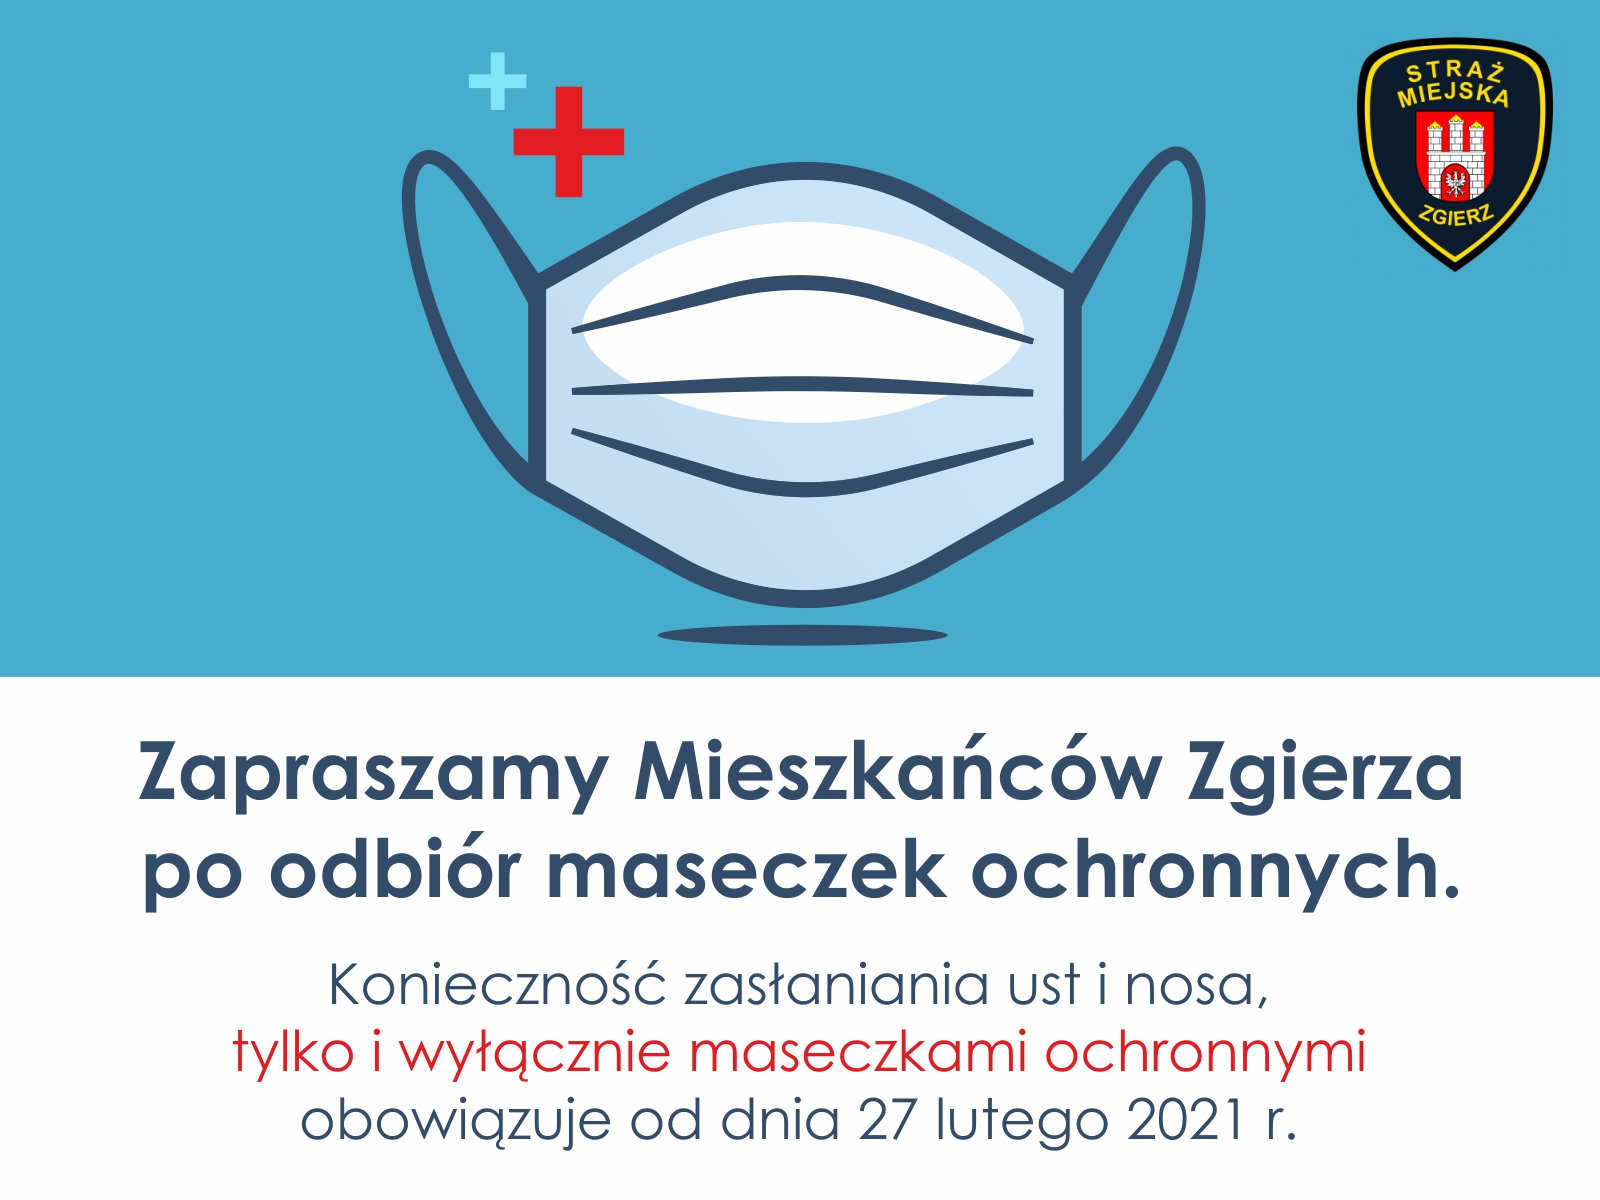 Maseczki ochronne można otrzymać w siedzibie Straży Miejskiej w Zgierzu przy ul. ks. J. Popiełuszki 3a w Zgierzu. Maseczki będą wydawane do wyczerpania zapasów. 